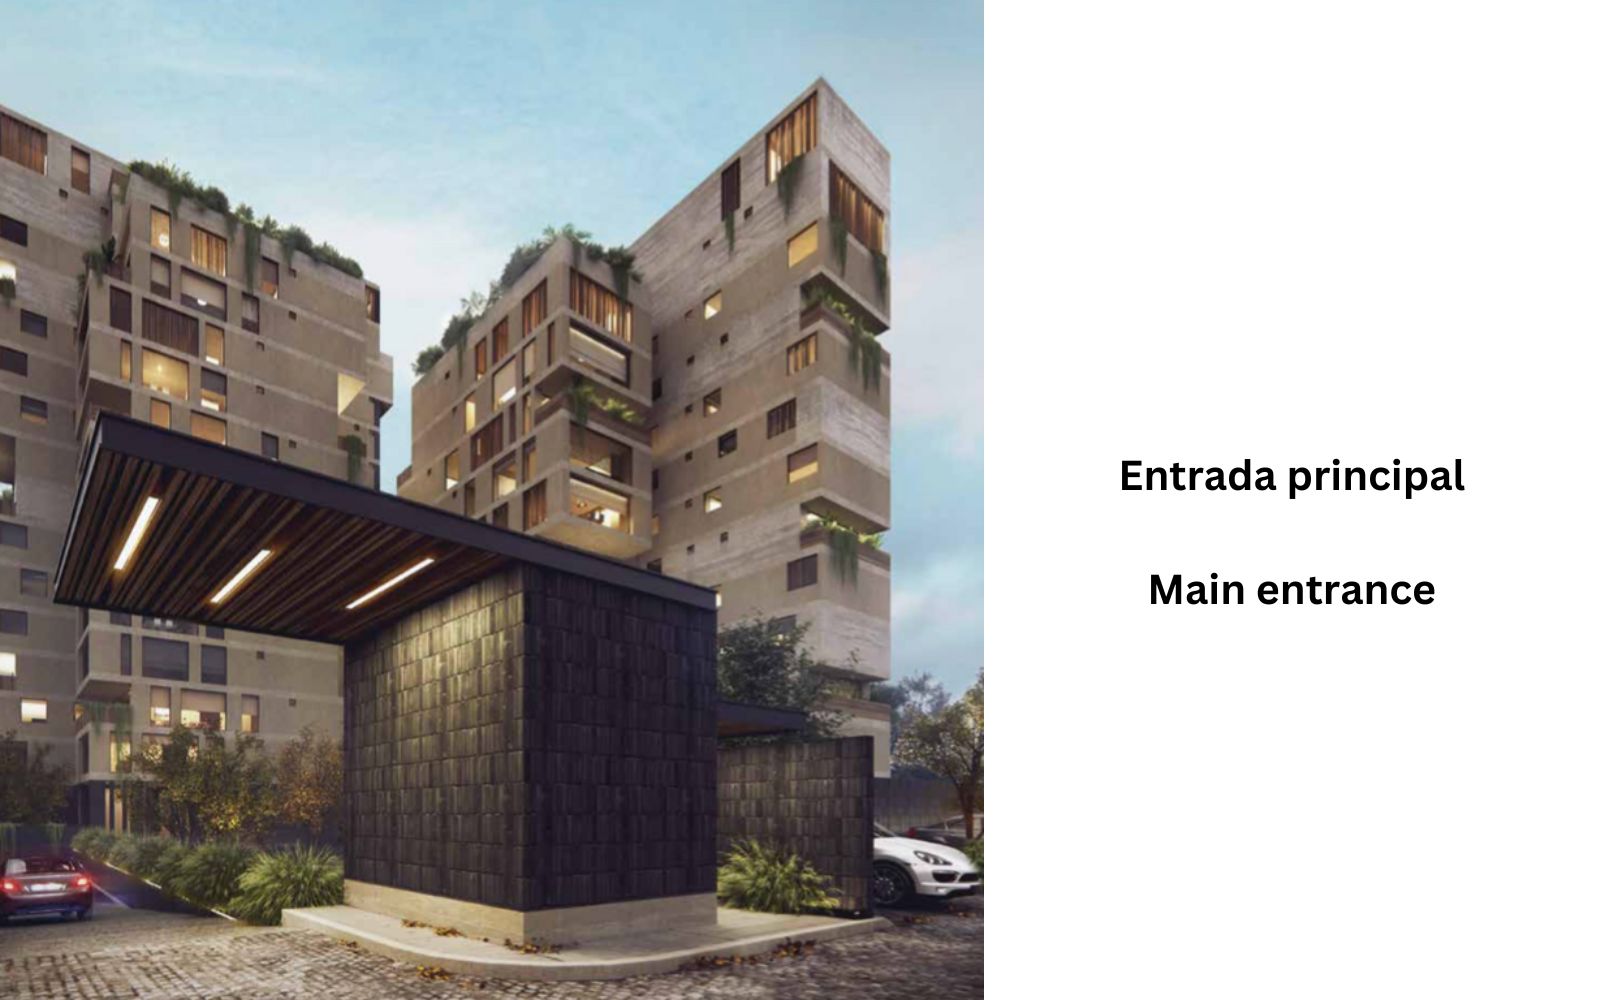 Condominio con amplio jardín, alberca, terraza, pet friendly en venta Querétaro.